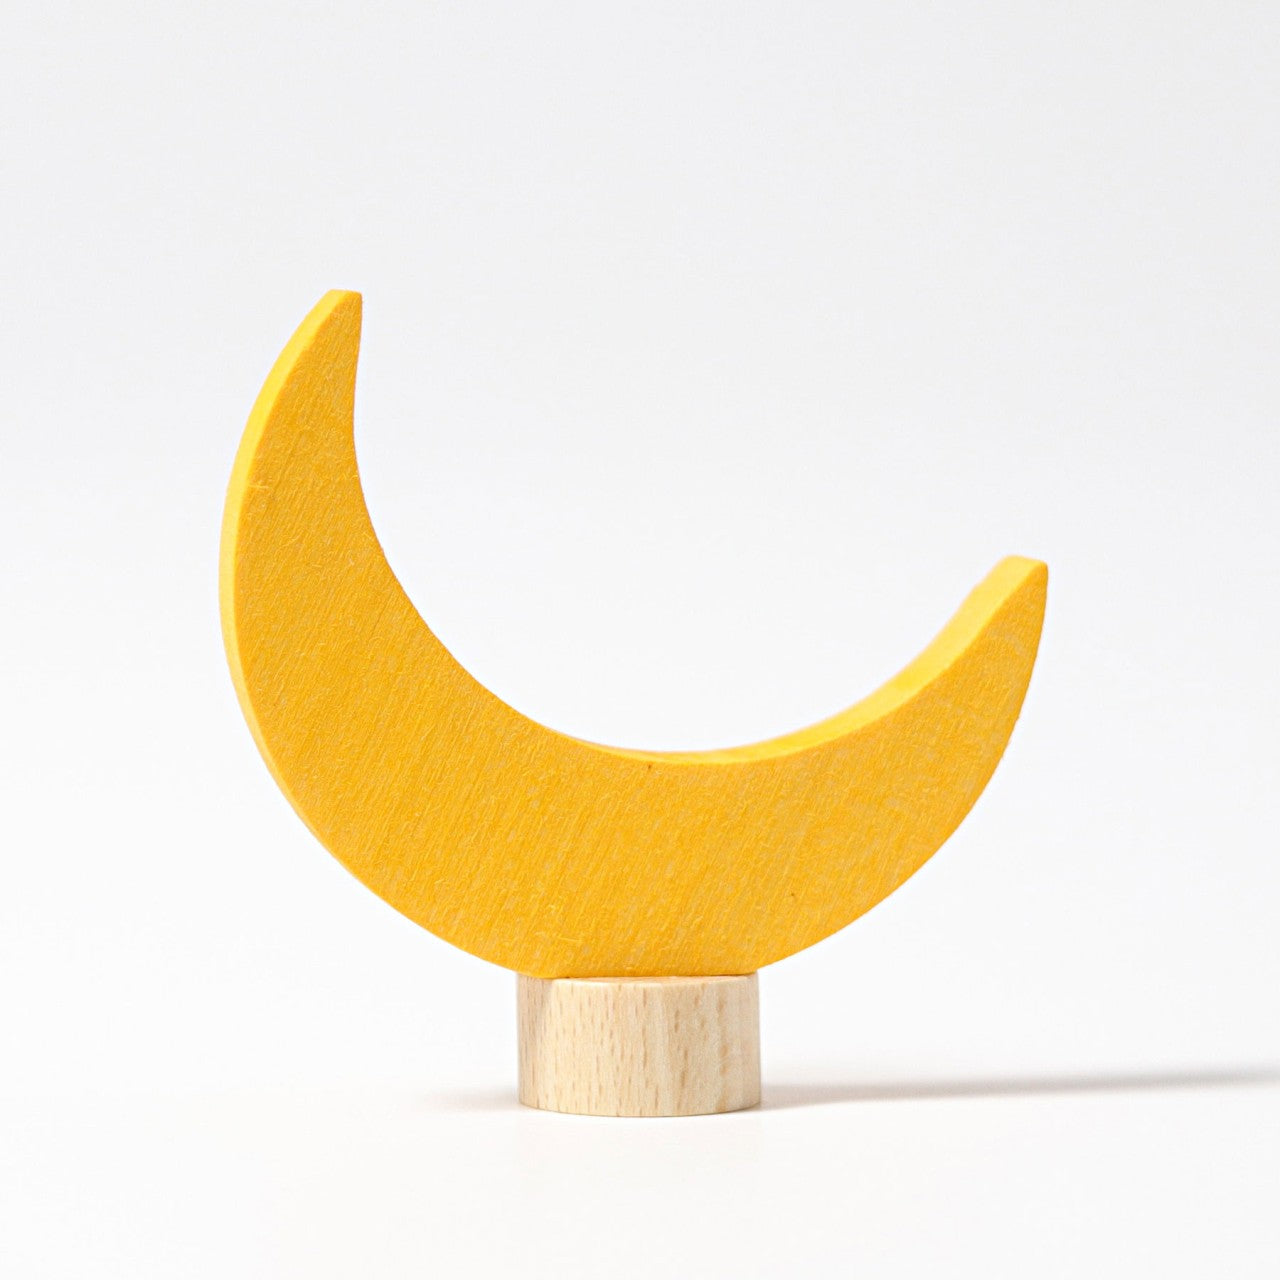 Grimm's pin figure moon